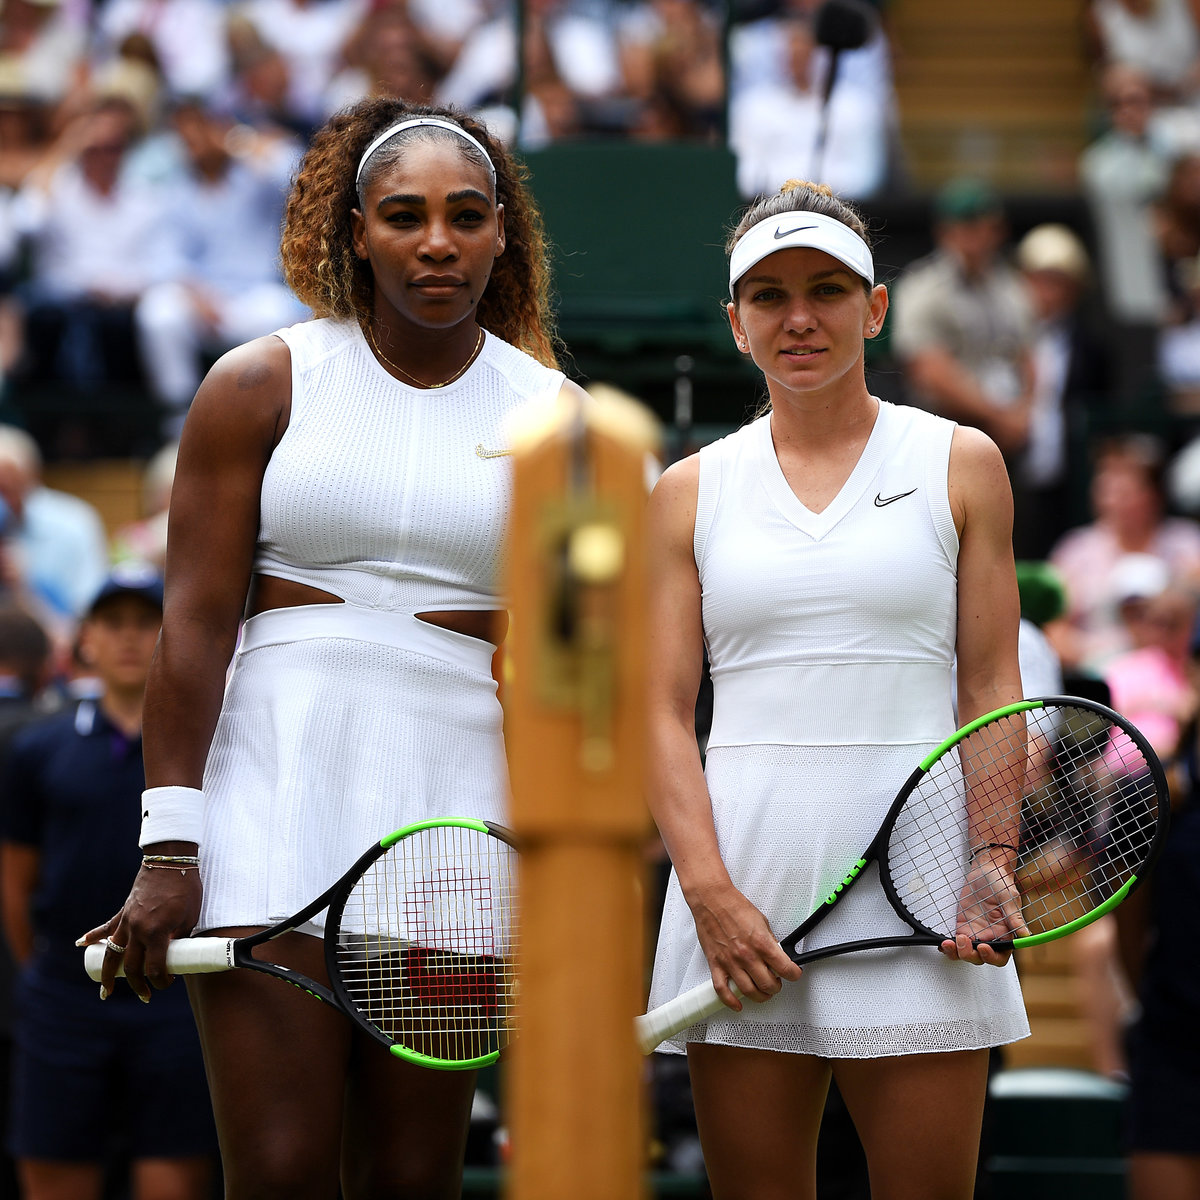 Australian Open Serena Williams vs Simona Halep im TV, Livestream und Liveticker · tennisnet